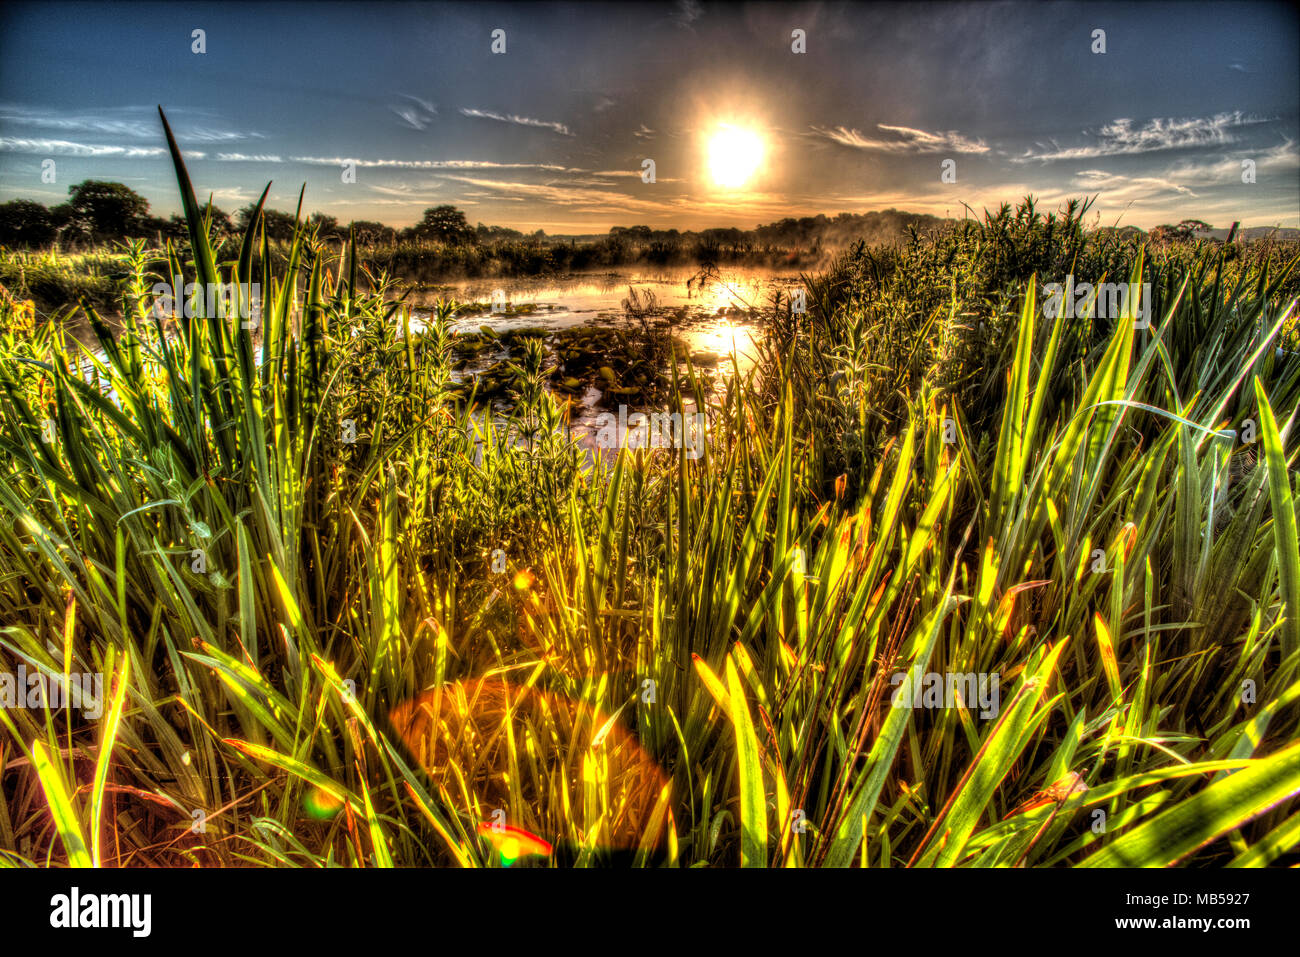 Dorf von Coddington, England. Künstlerische sonnenaufgang Blick auf ein Süßwasser-Teich in einem Cheshire Landwirtschaft Feld. Stockfoto